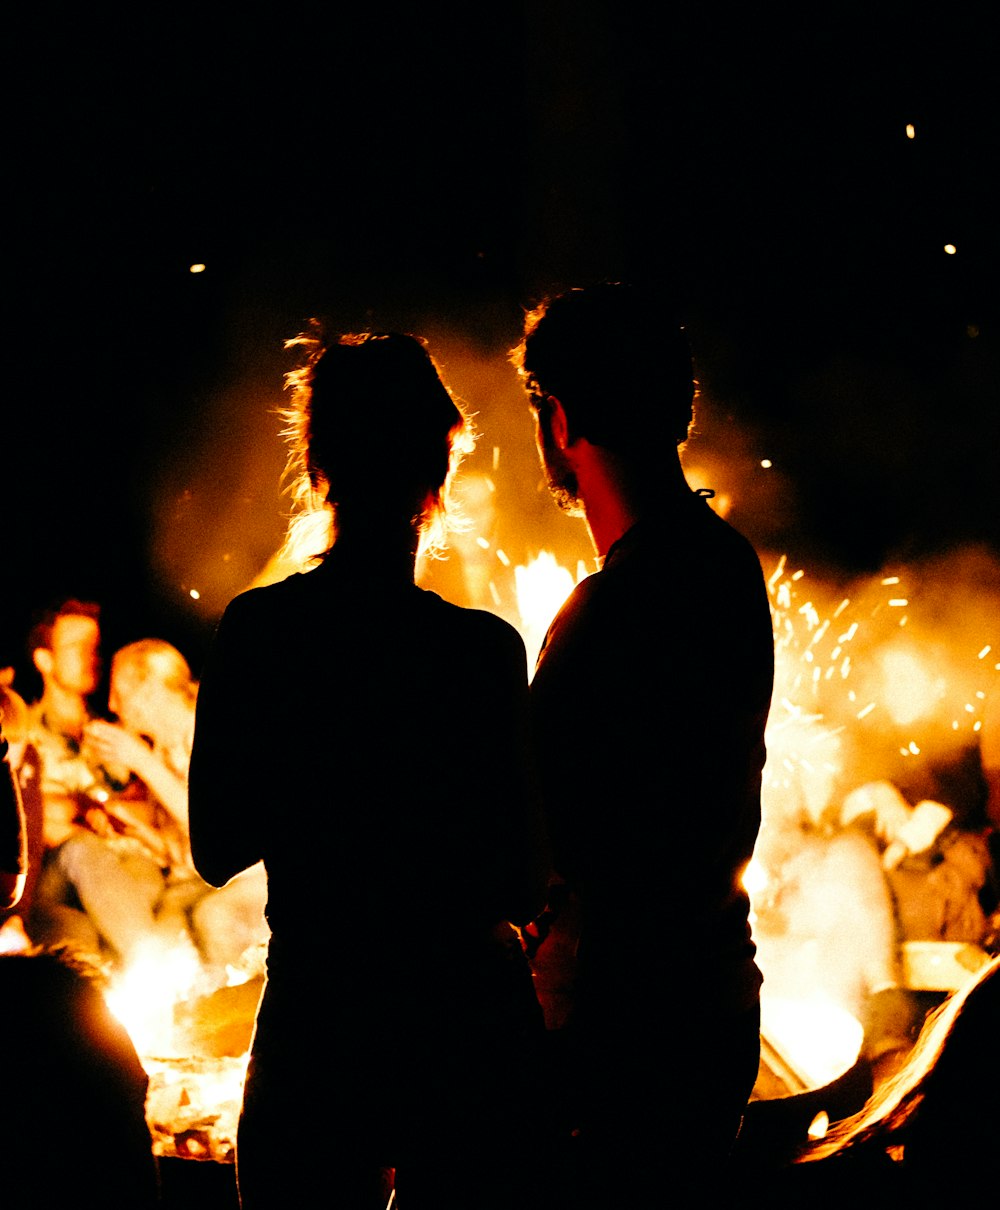 焚き火の前に立つ2人